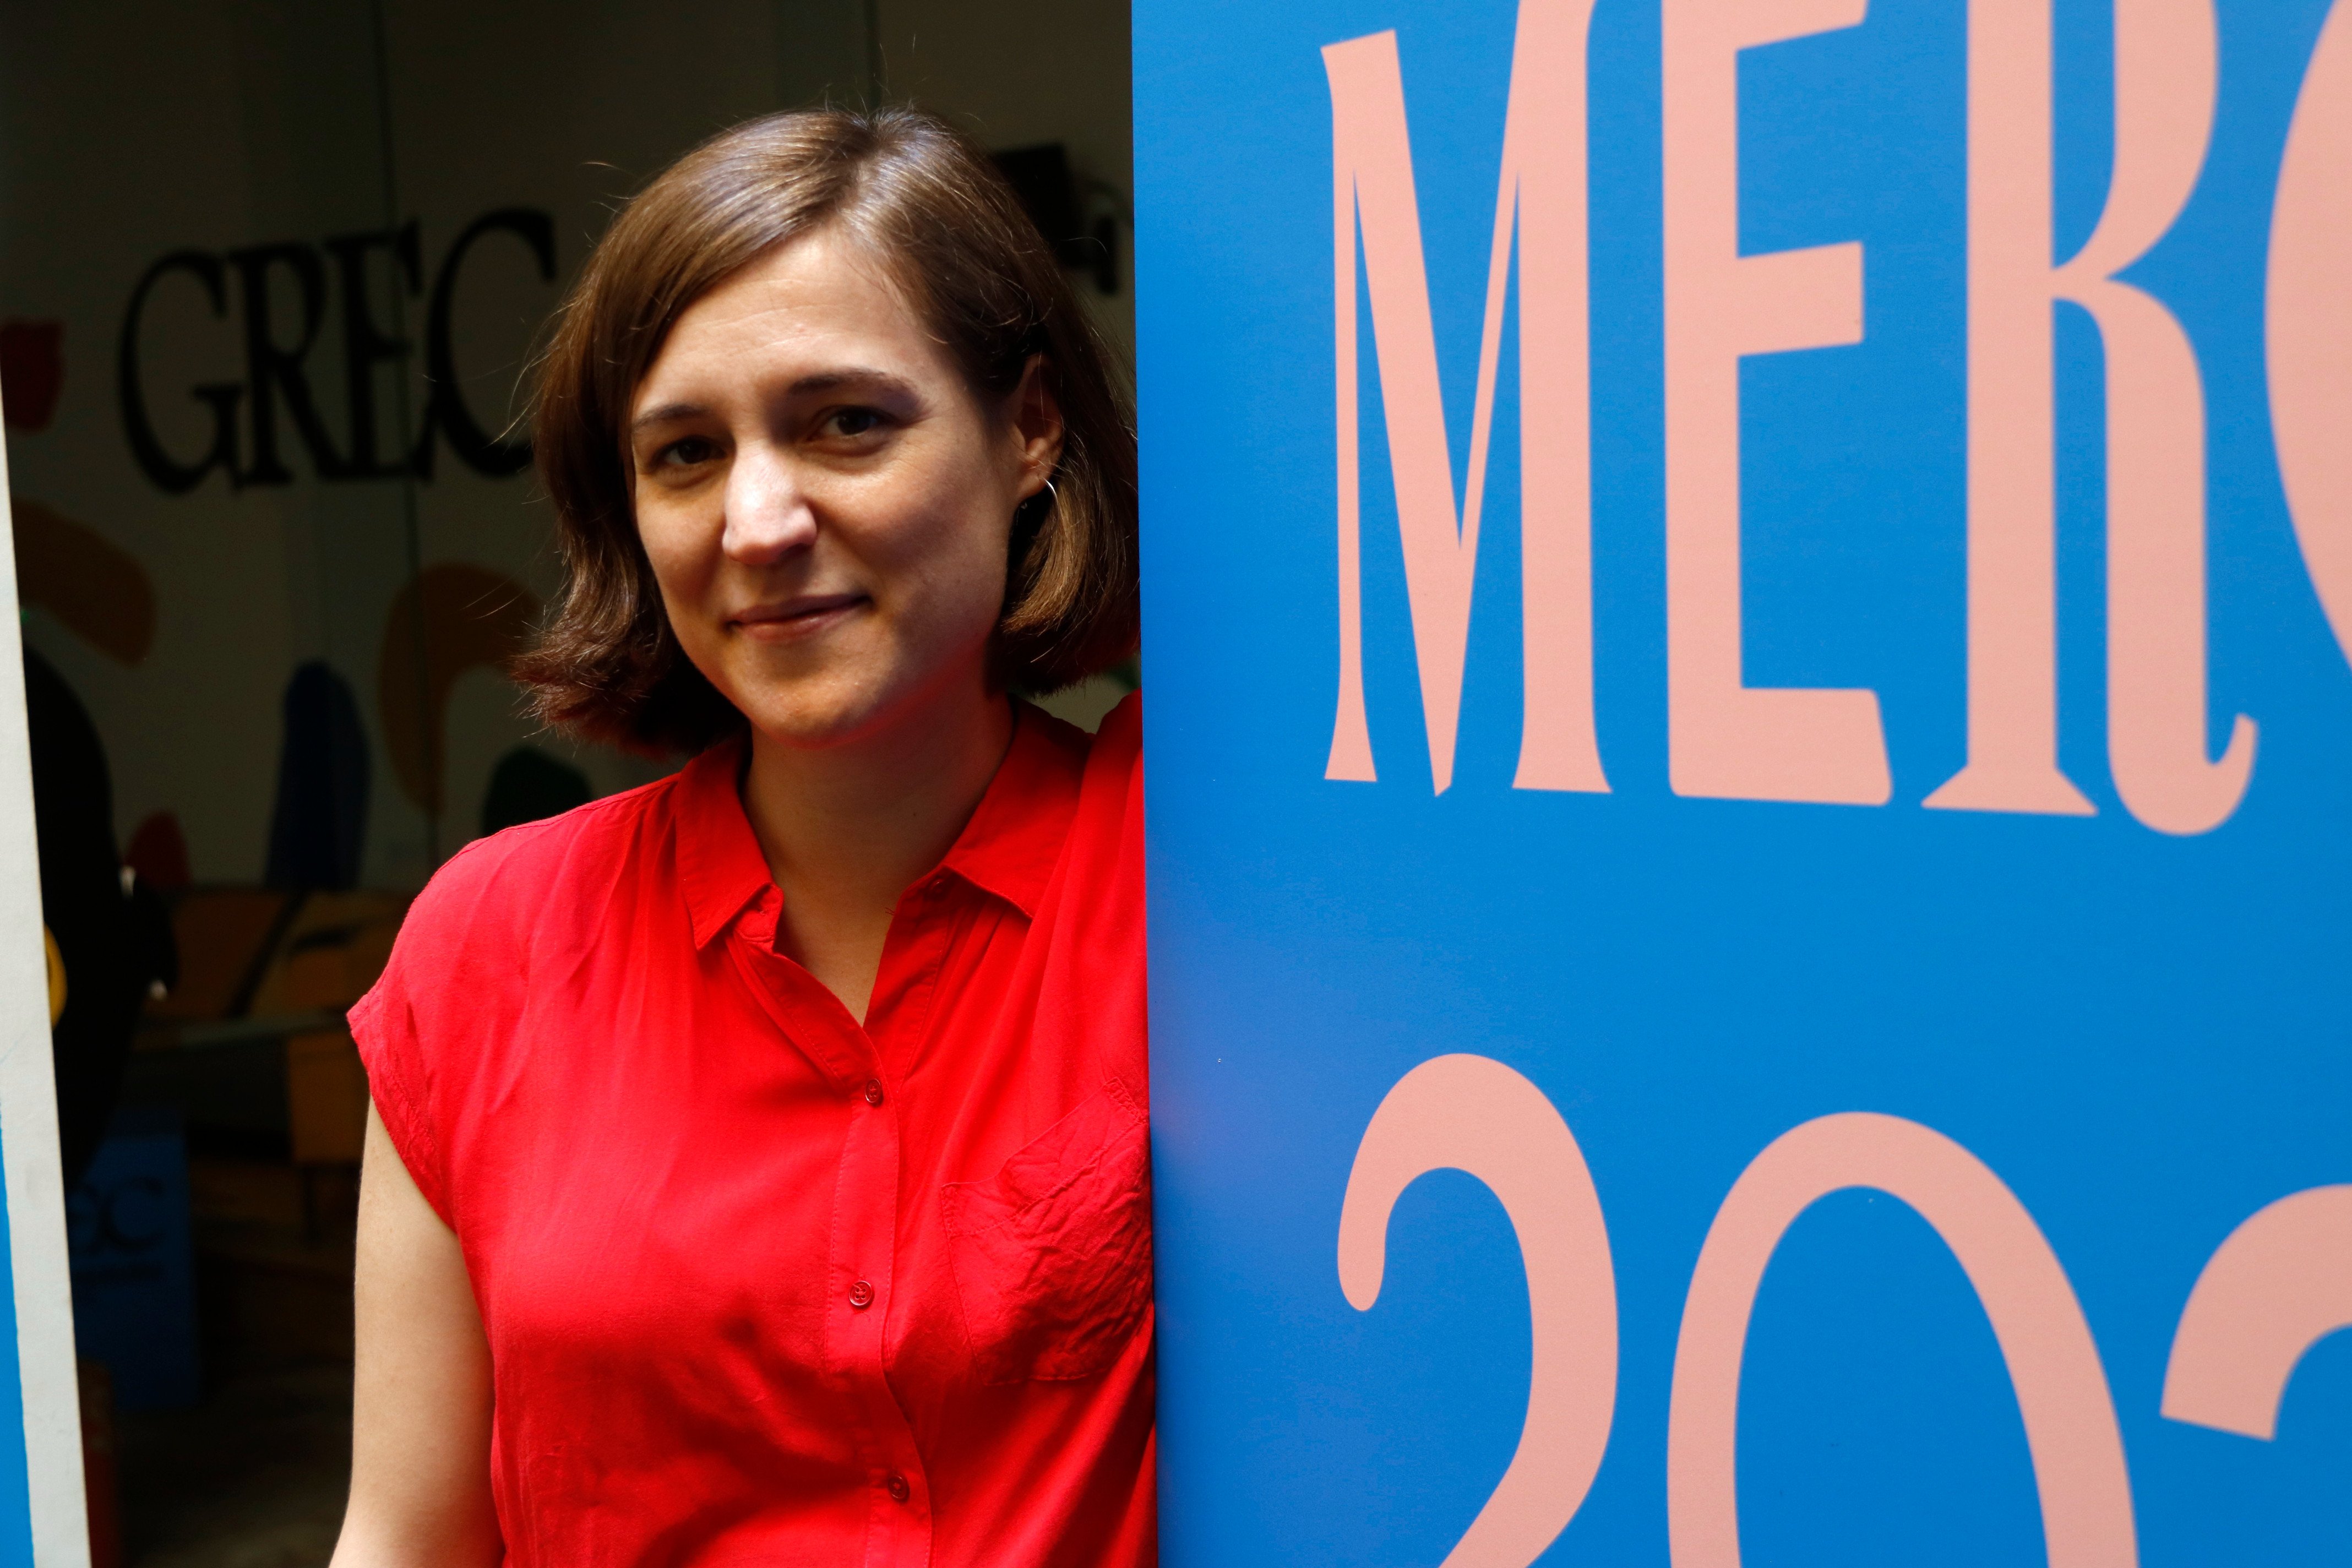 Horari i on veure el pregó de la Mercè 2022 a càrrec de Carla Simón